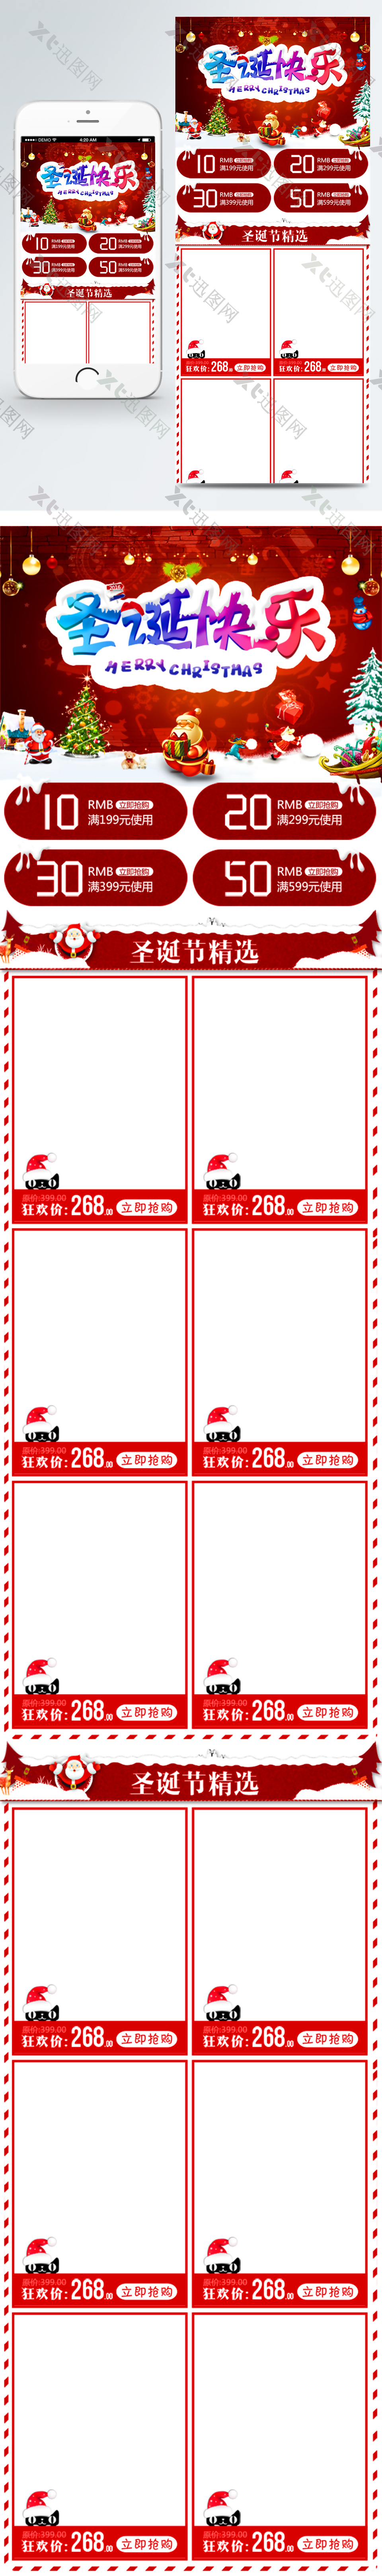 暗红剪纸风格圣诞节活动淘宝手机端首页模板